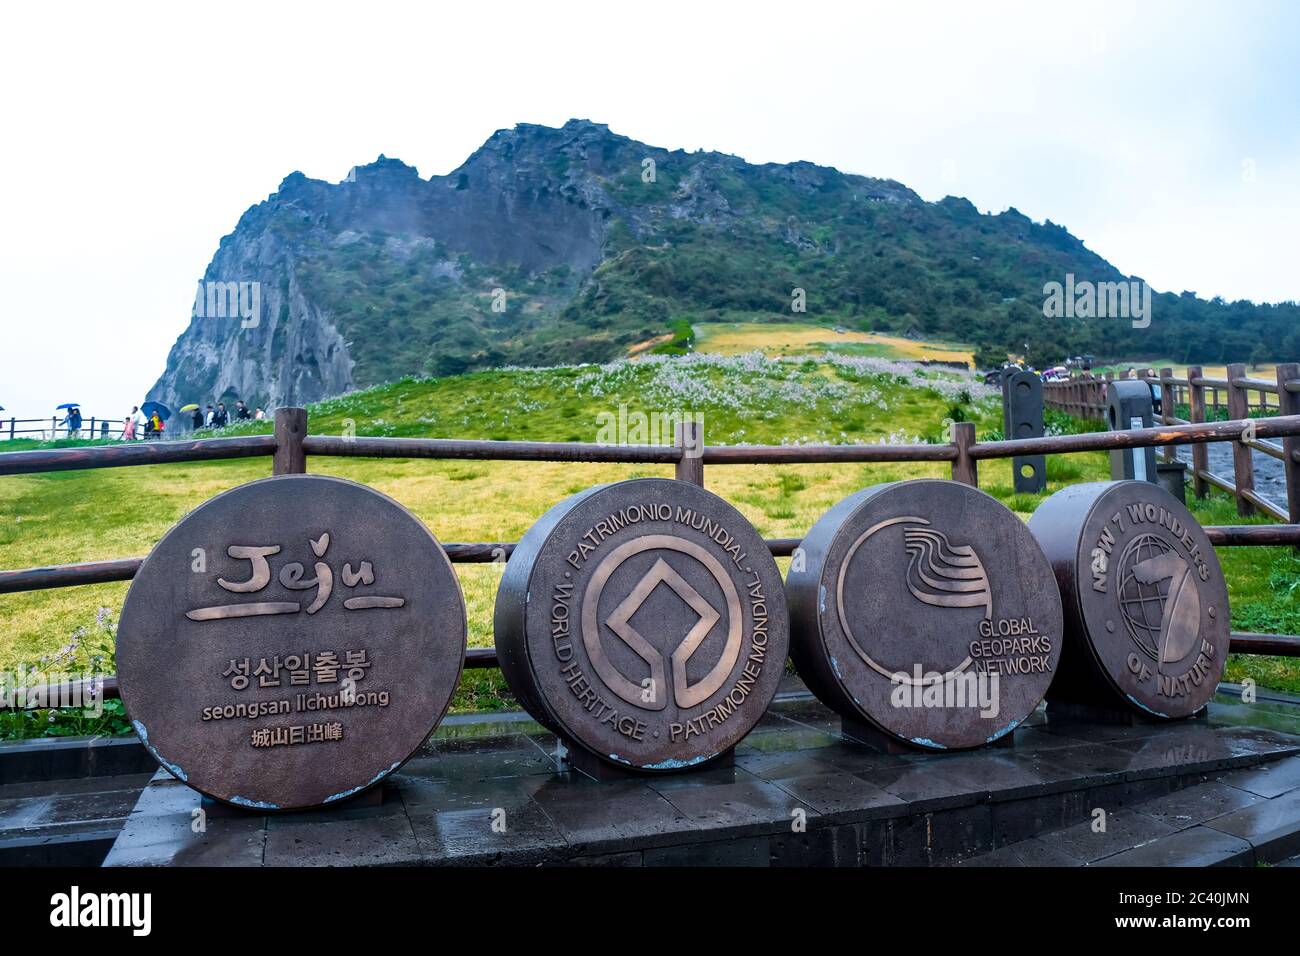 ÎLES JEJU, CORÉE DU SUD : vue sur le pic Seongsan Ilchulbong, l'une des sept nouvelles merveilles de la nature et un site du patrimoine naturel mondial de l'UNESCO Banque D'Images